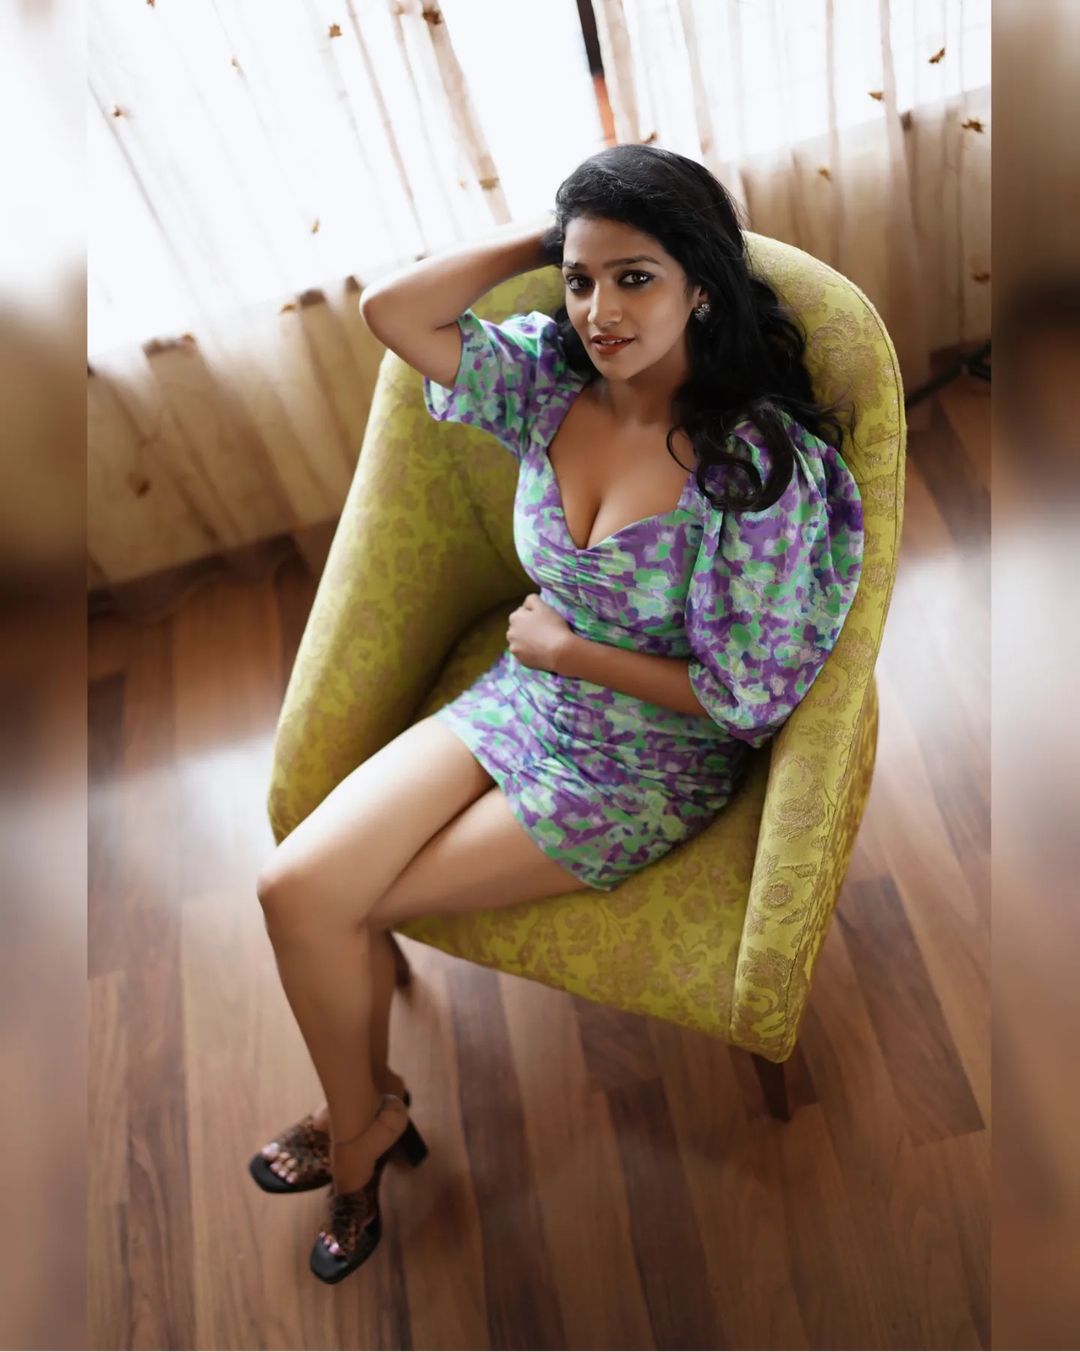 டைட் உடையில் முன்னழகையும், தொடையழகையும் ஓப்பனா காட்டும் சீரியல் நடிகை….Actress Lavanya Manickam Latest Hot Photos